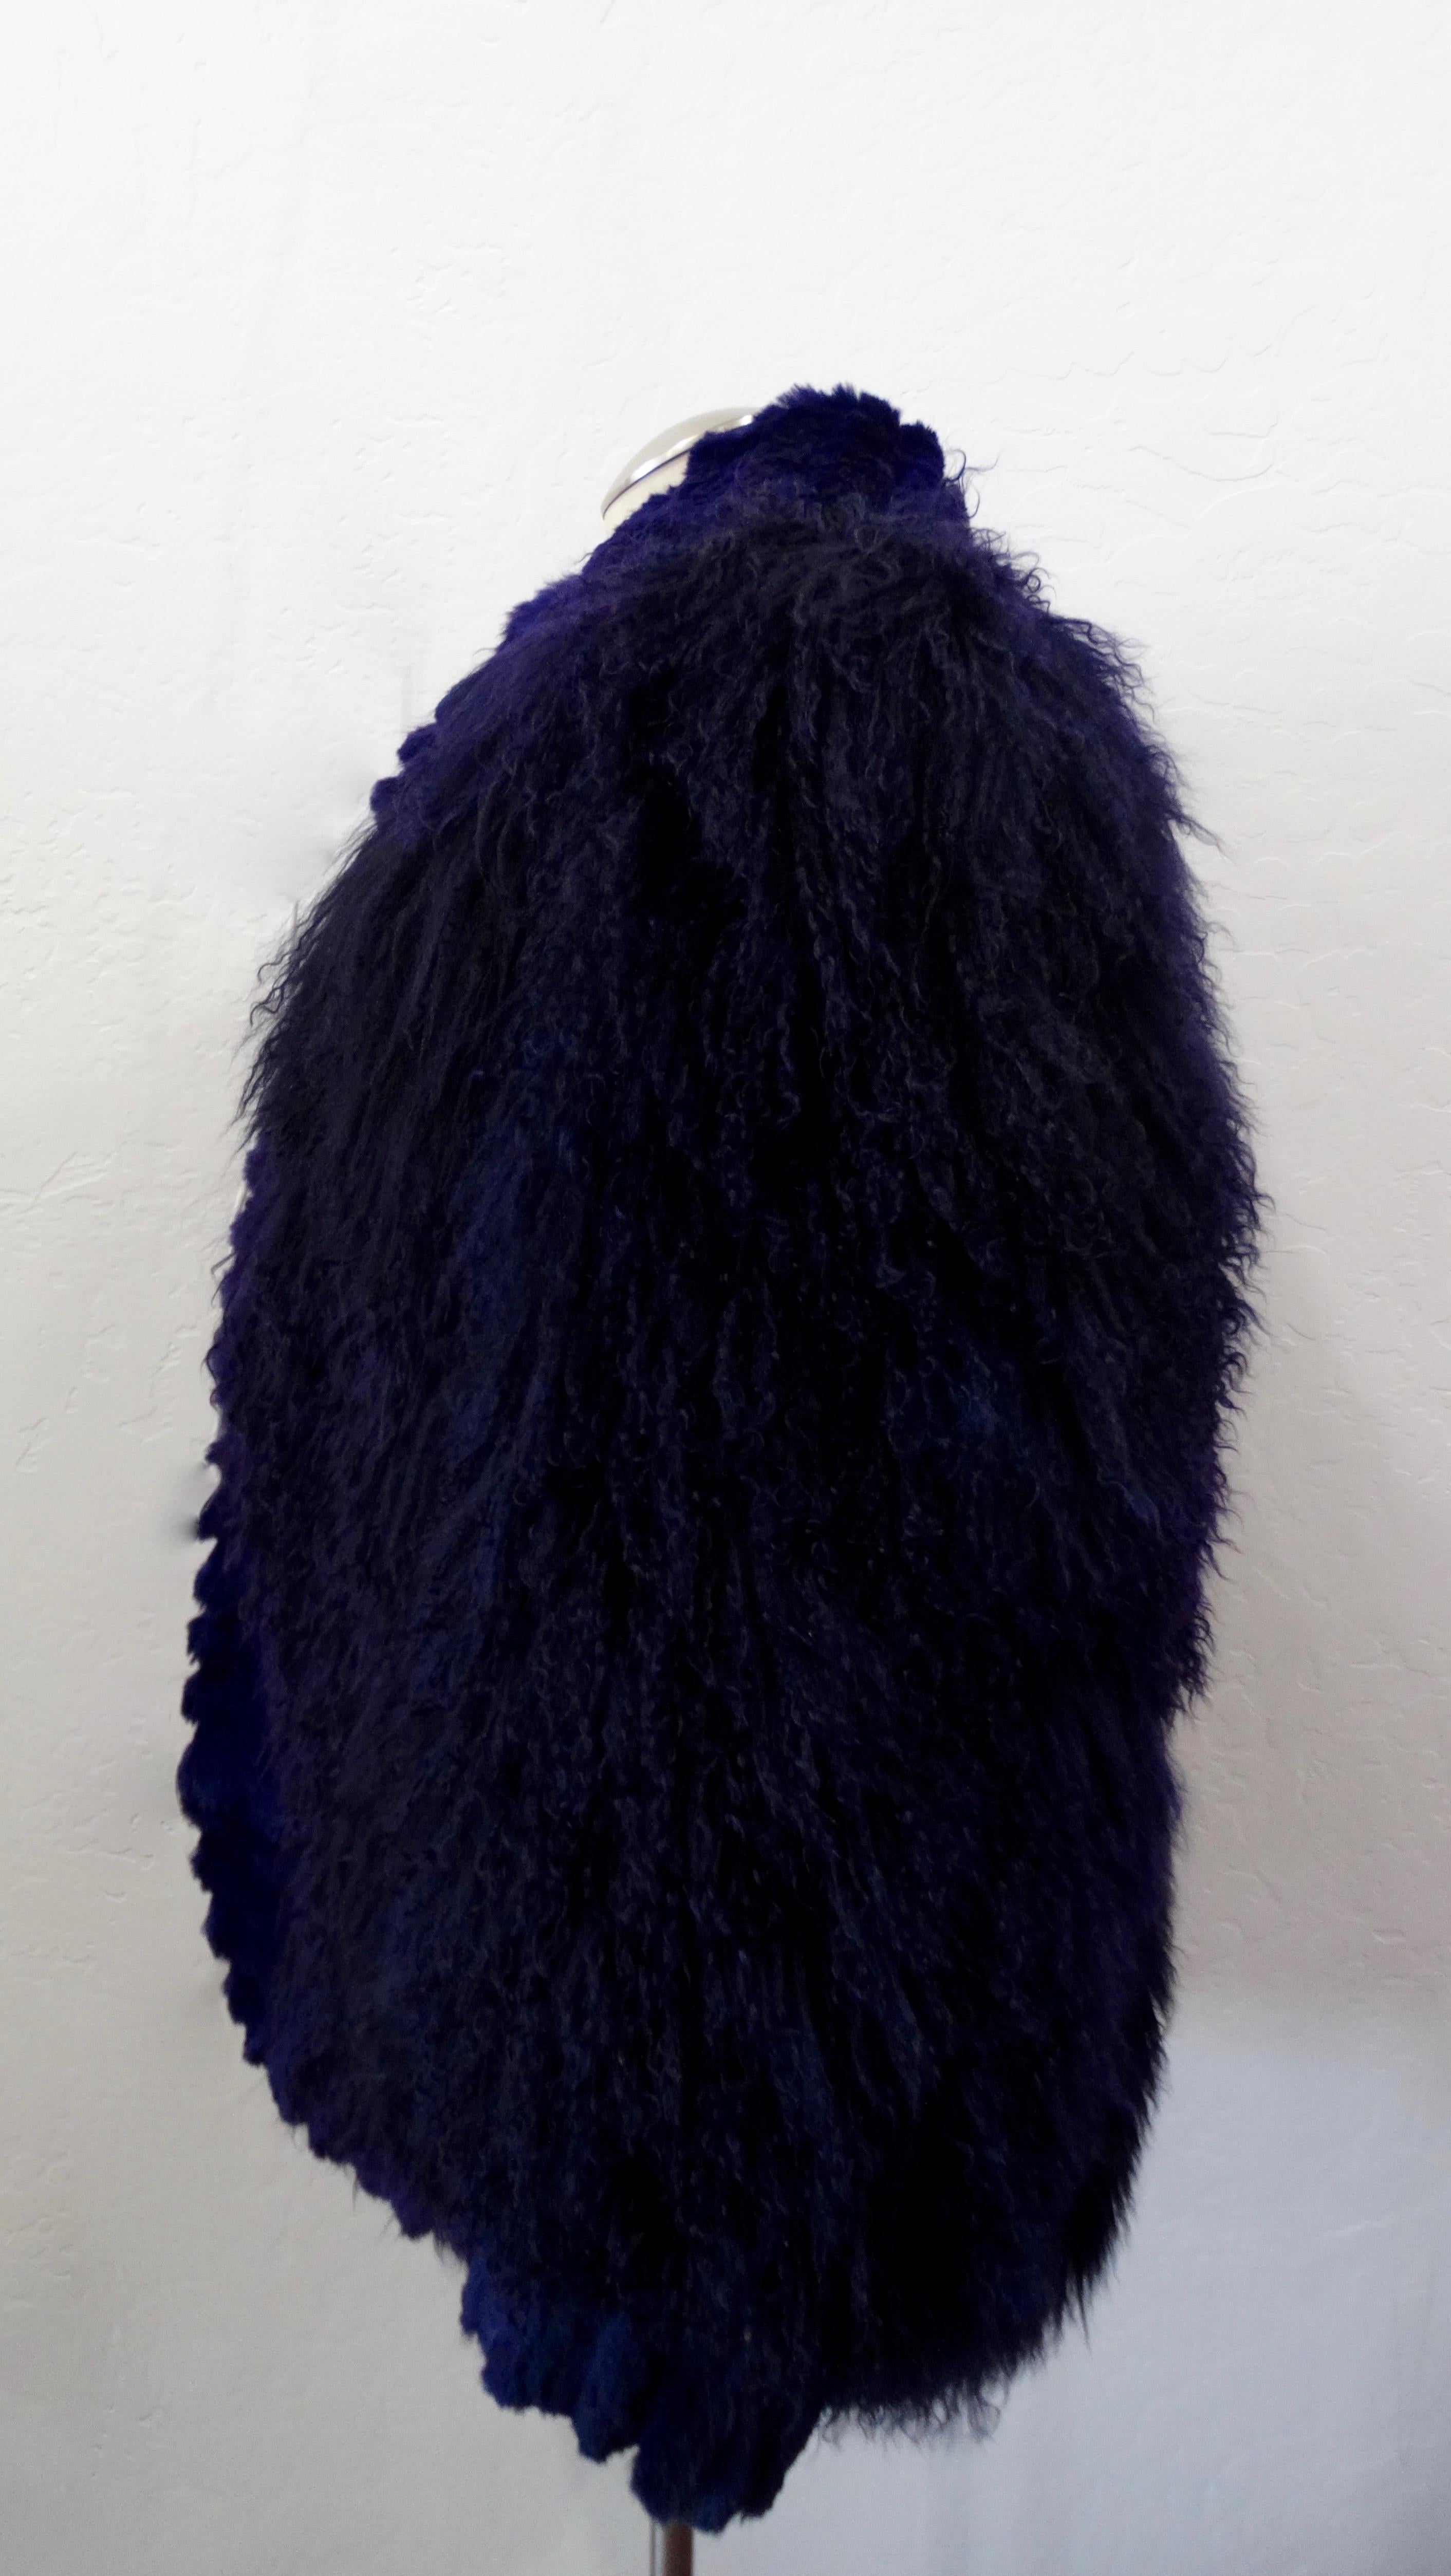 black jacket with purple fur